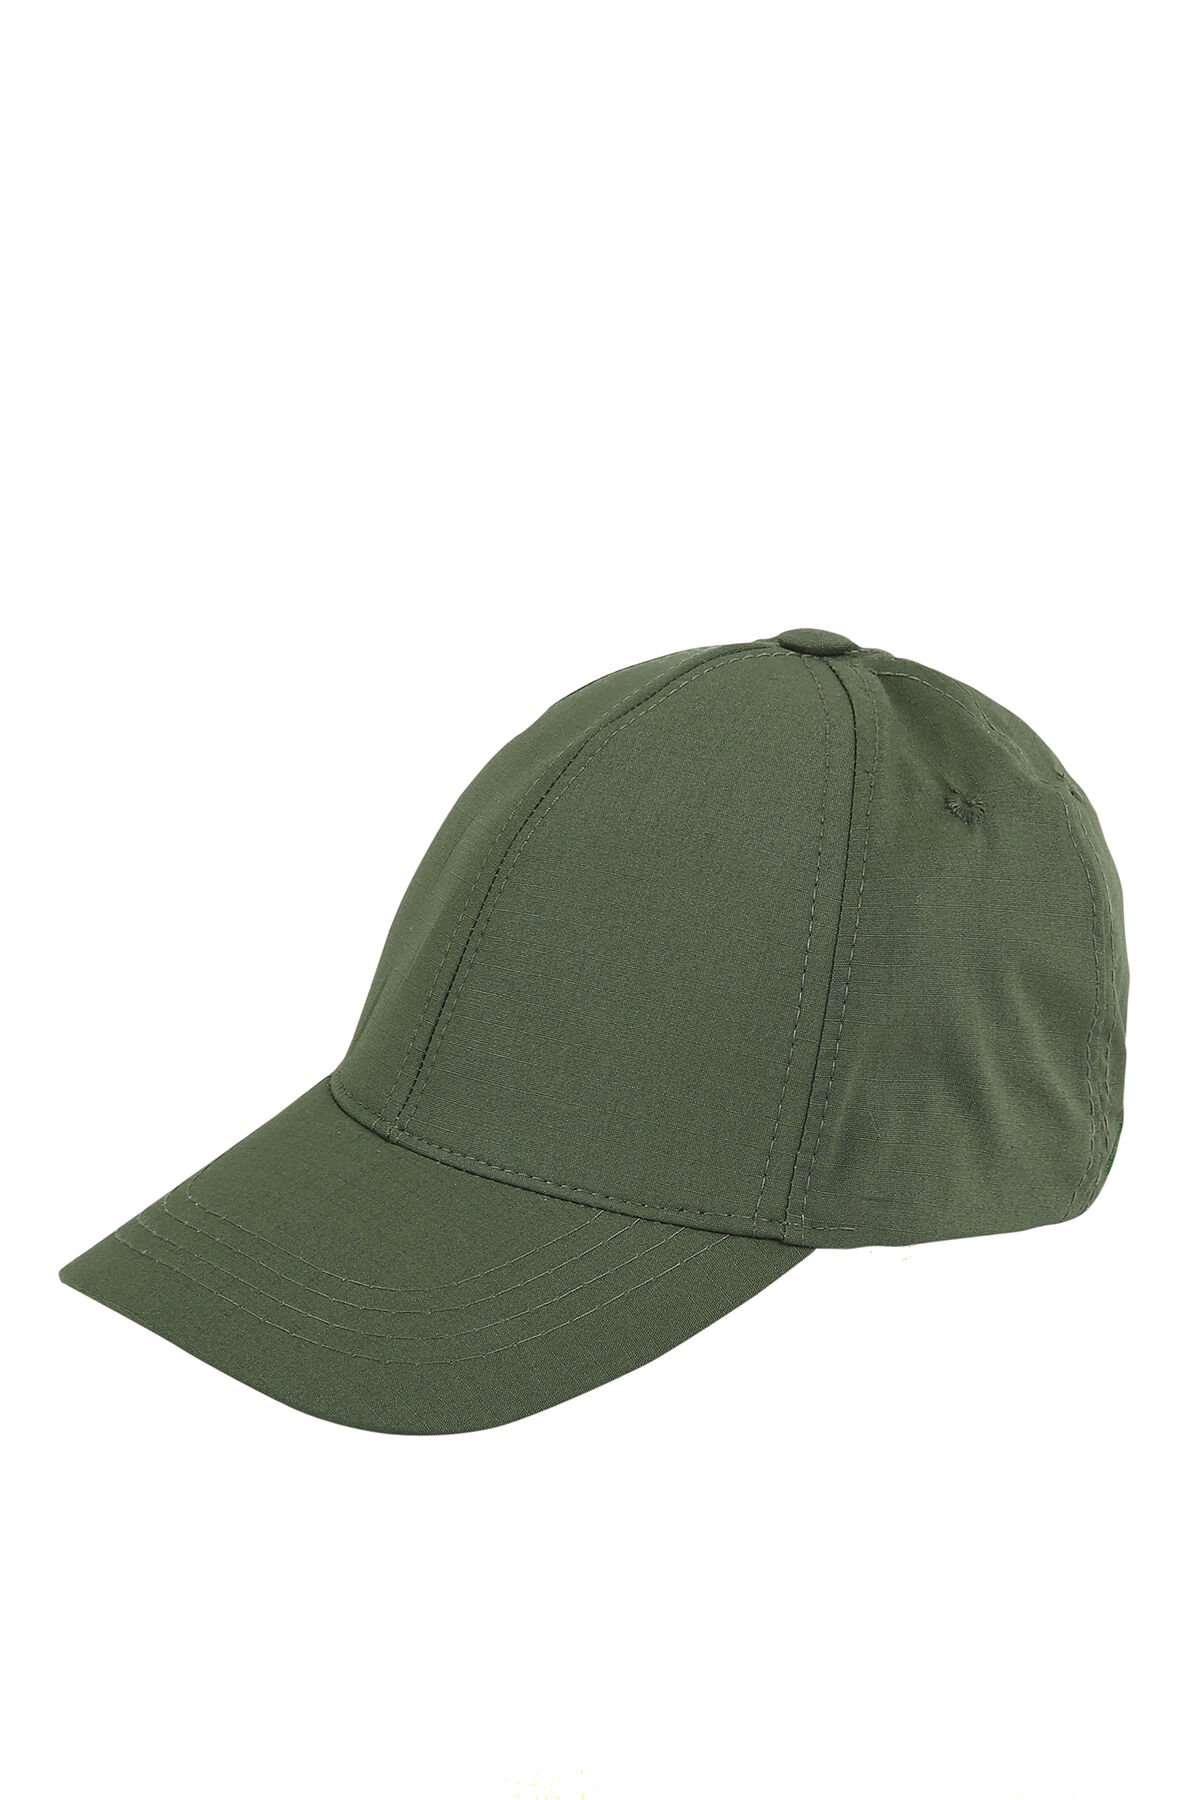 Monel Outdoor Tactical Günlük Haki Yeşil Şapka Rahat Kamp Trekking Giyim 4 Mevsim